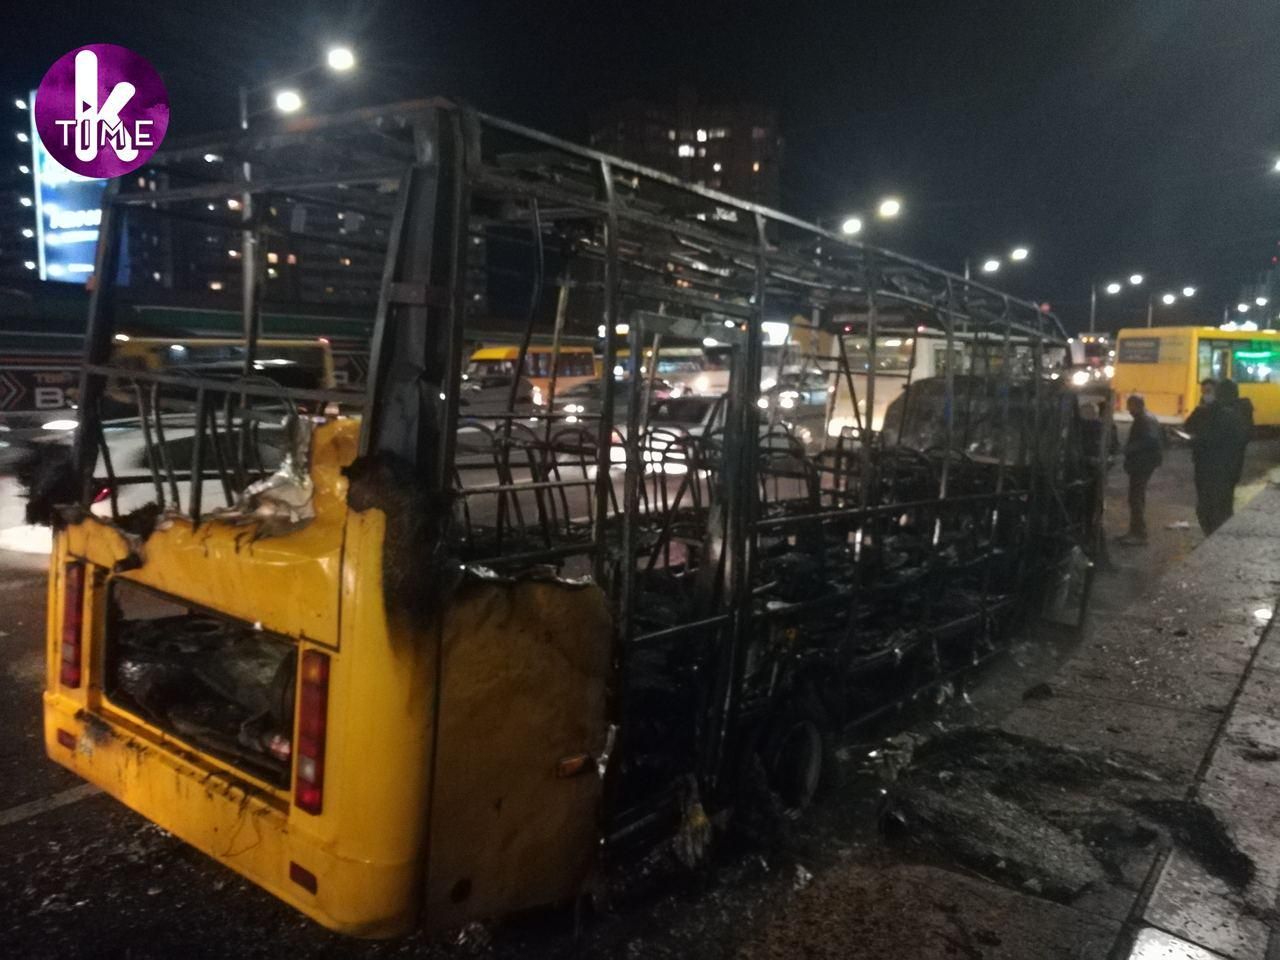 Огонь поглотил все: в Киеве в маршрутке произошел взрыв - видео